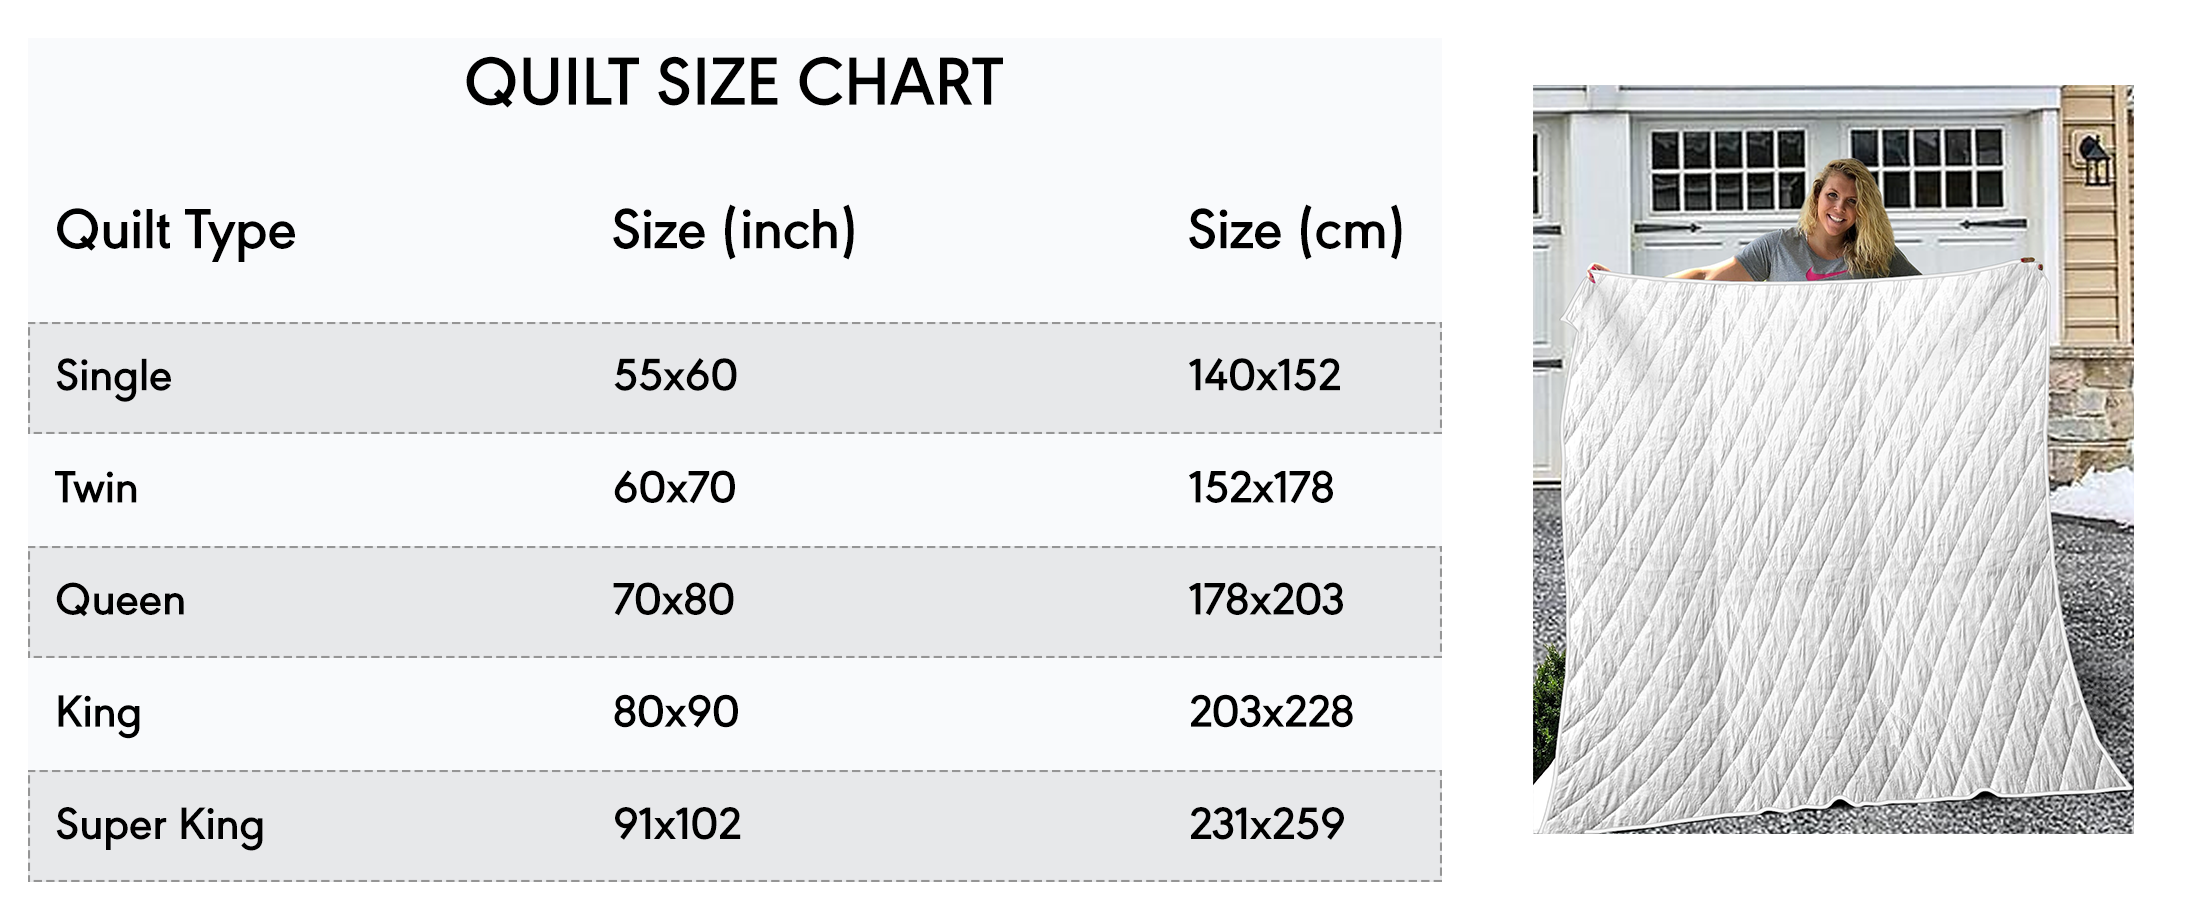 Quilt Size Chart - Grinds Shop